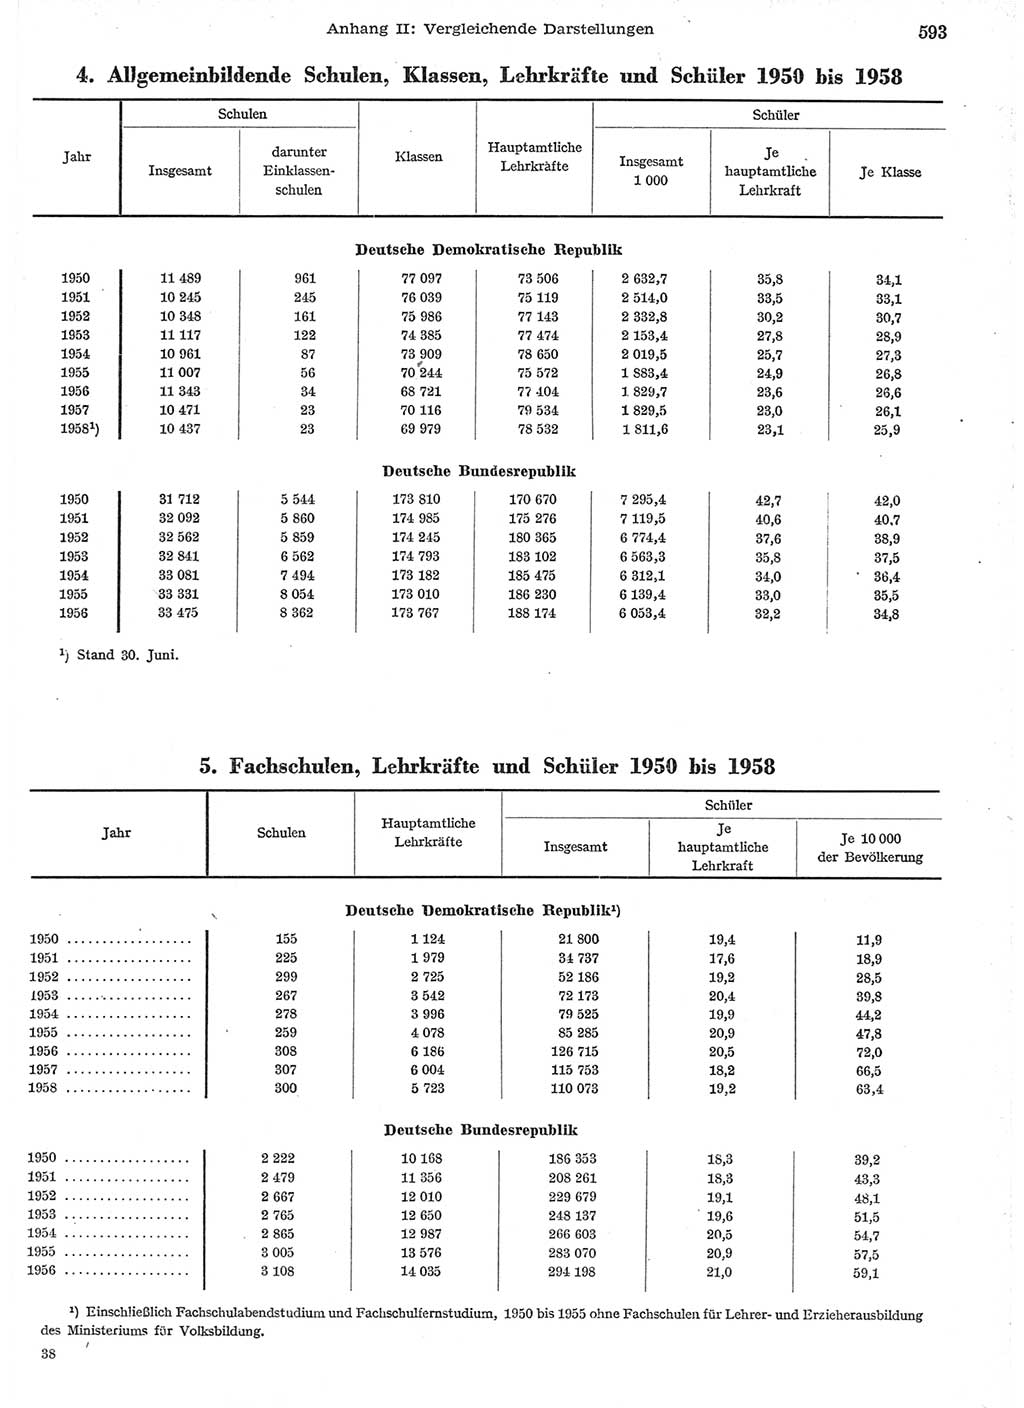 Statistisches Jahrbuch der Deutschen Demokratischen Republik (DDR) 1958, Seite 593 (Stat. Jb. DDR 1958, S. 593)